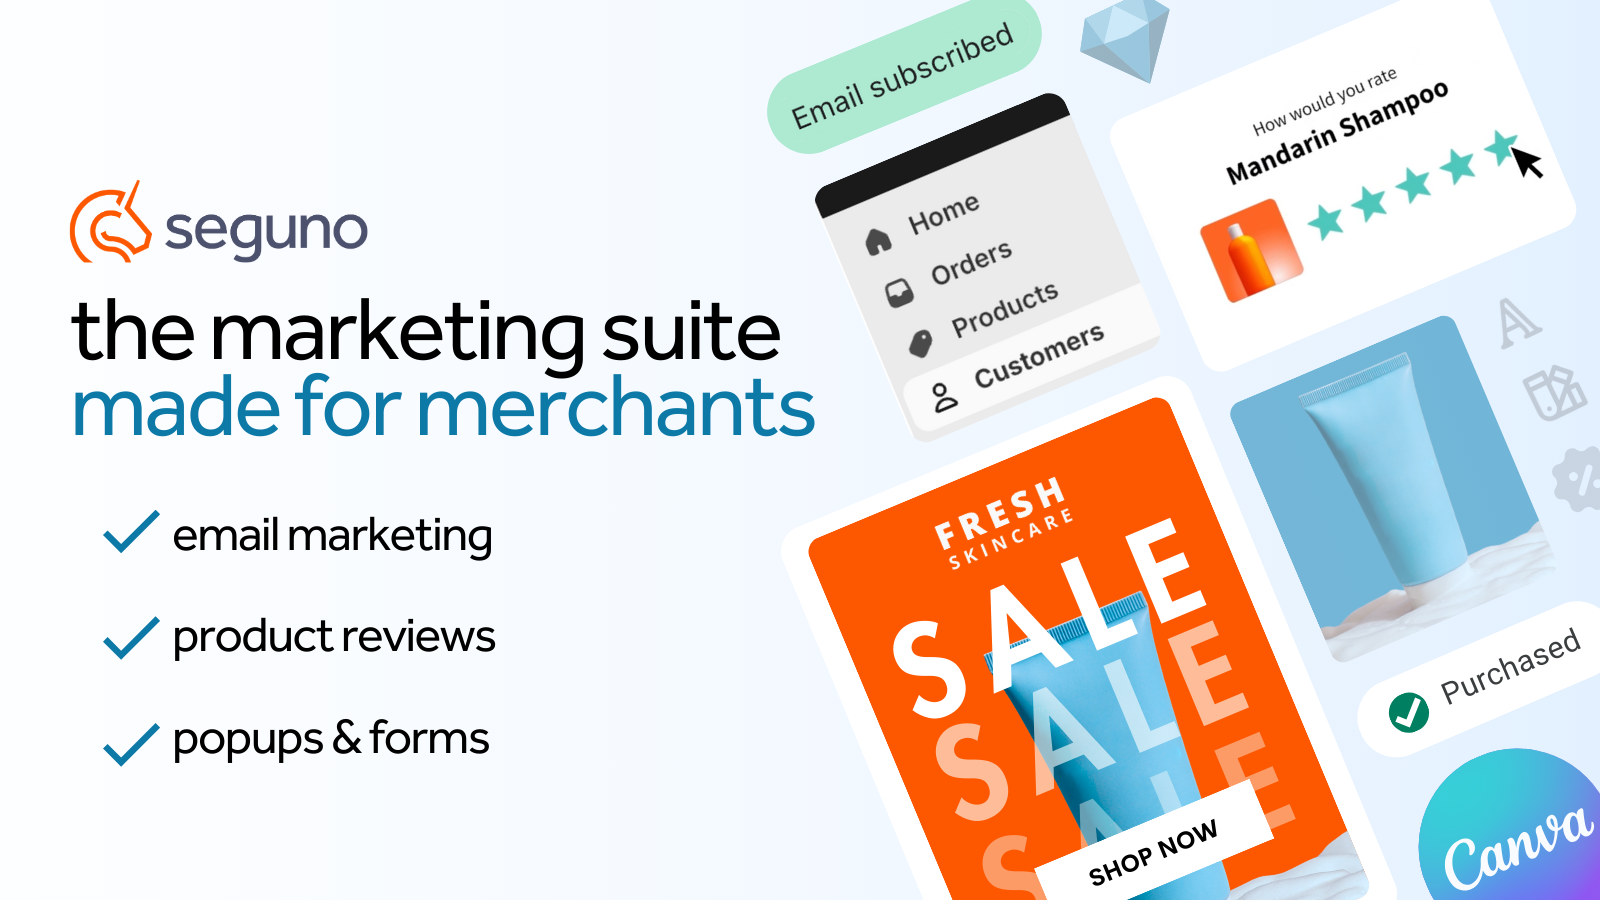 Suite Marketing Seguno : marketing par email, avis sur les produits, popups